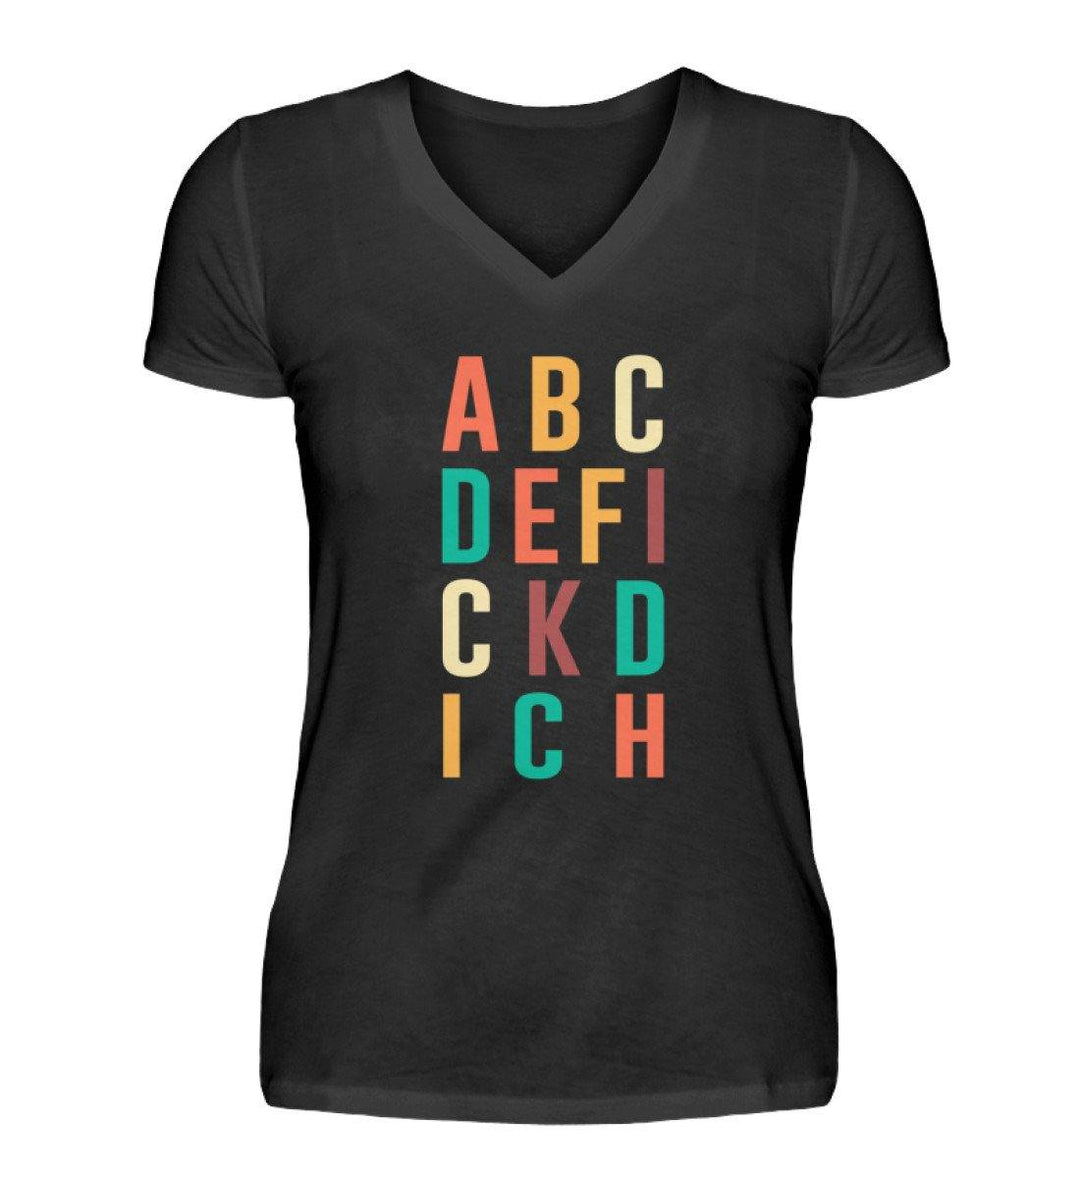 ABCDEFICKDICH - Words on Shirts  - V-Neck Damenshirt - Words on Shirts Sag es mit dem Mittelfinger Shirts Hoodies Sweatshirt Taschen Gymsack Spruch Sprüche Statement